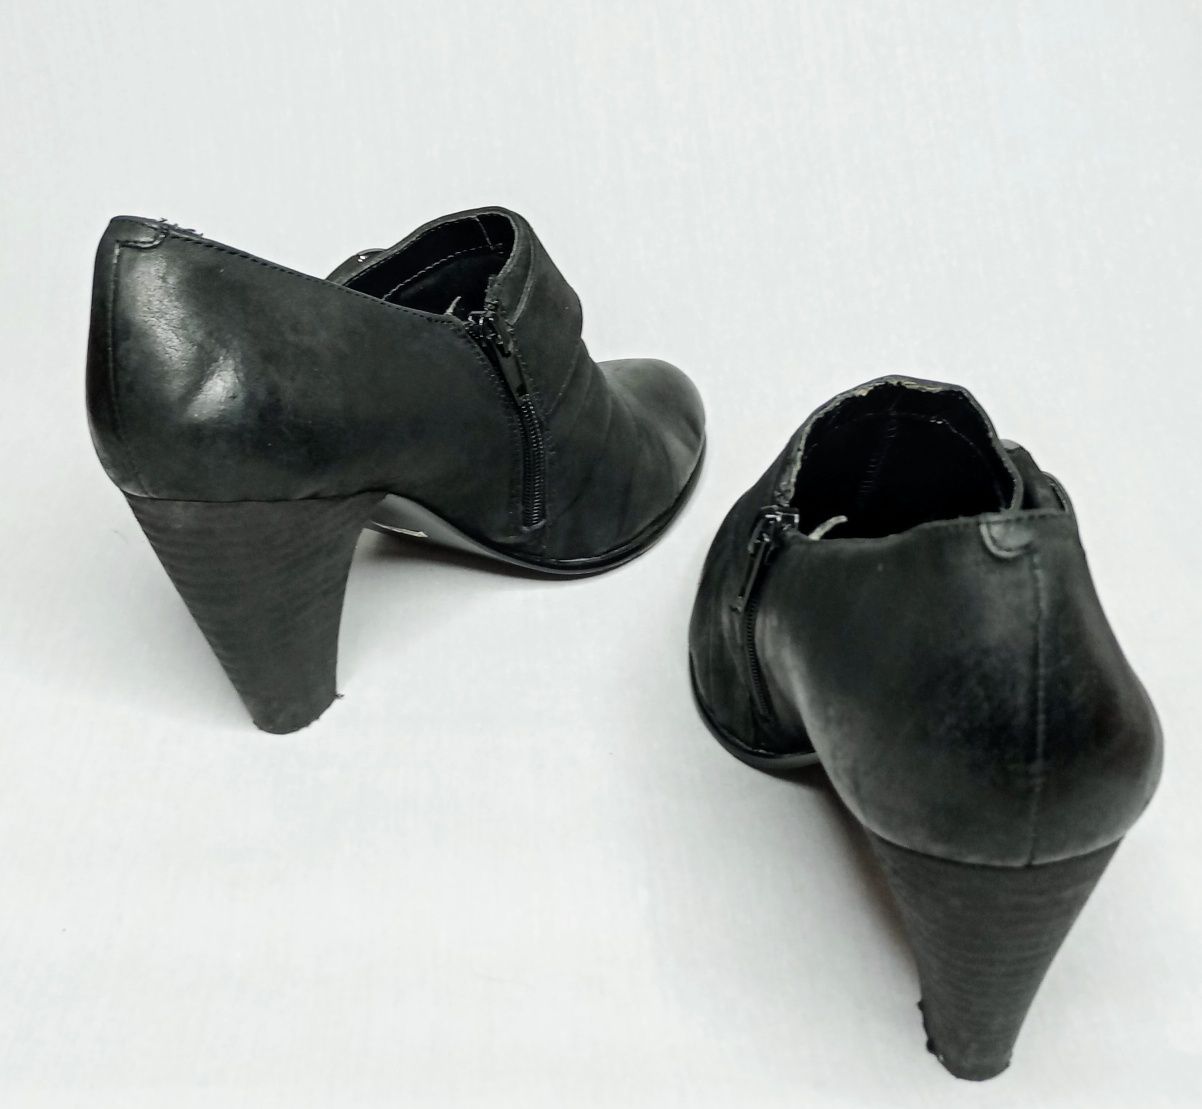 Czarneb pół-buty że skóry naturalnej